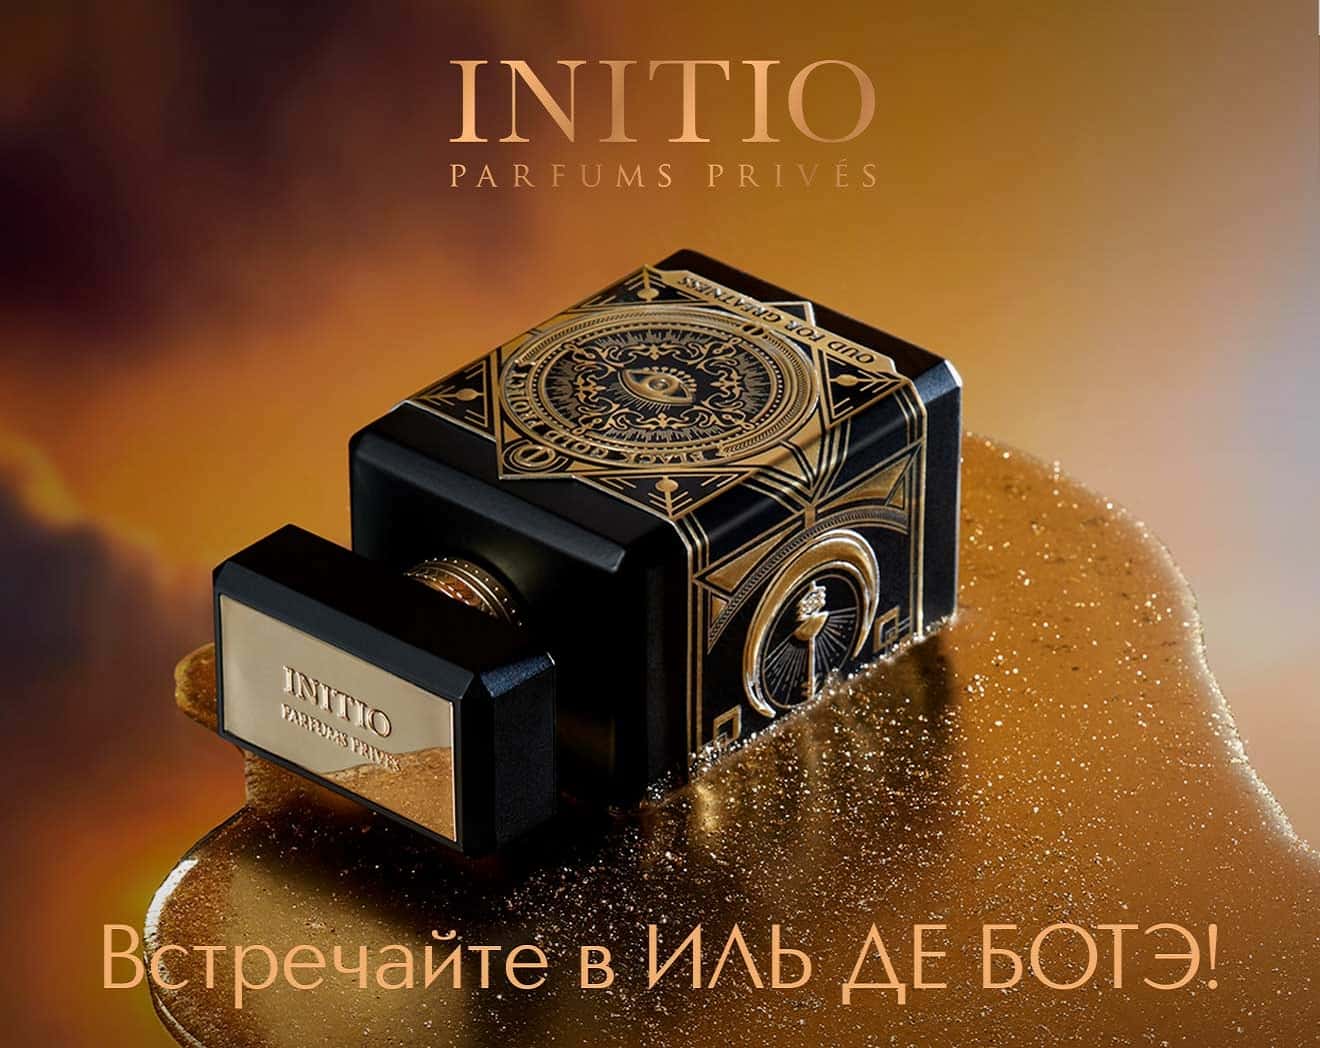 Встречайте новый бренд INITIO в ИЛЬ ДЕ БОТЭ!